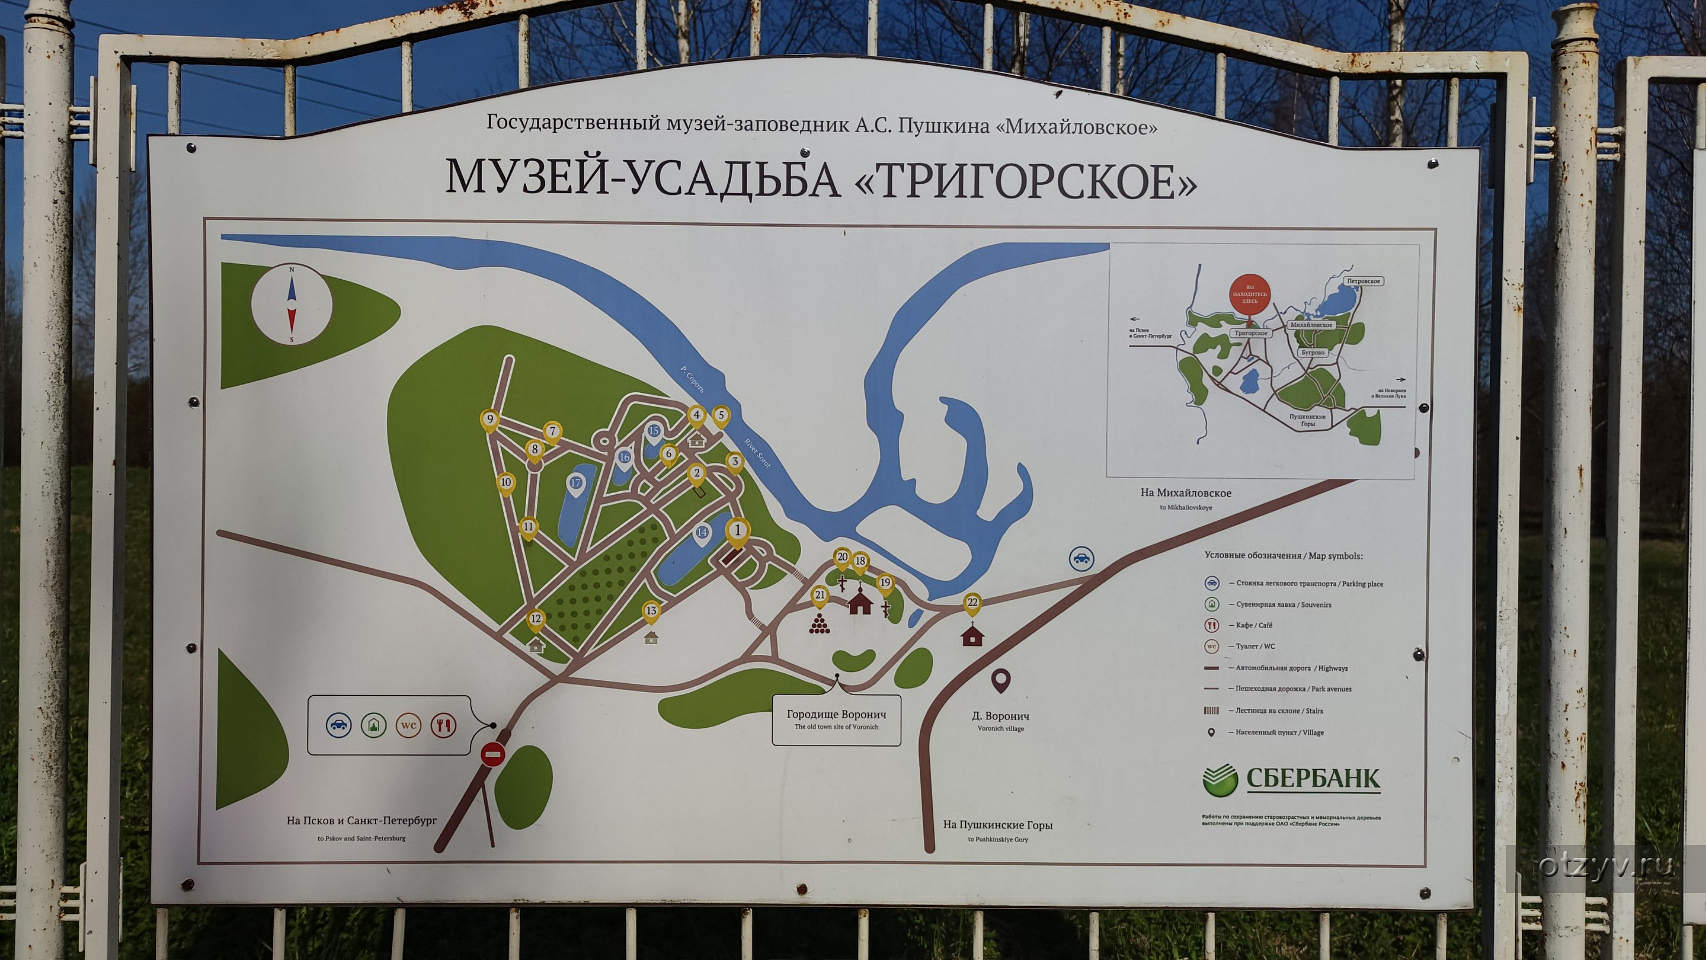 Тригорское музей-заповедник карта